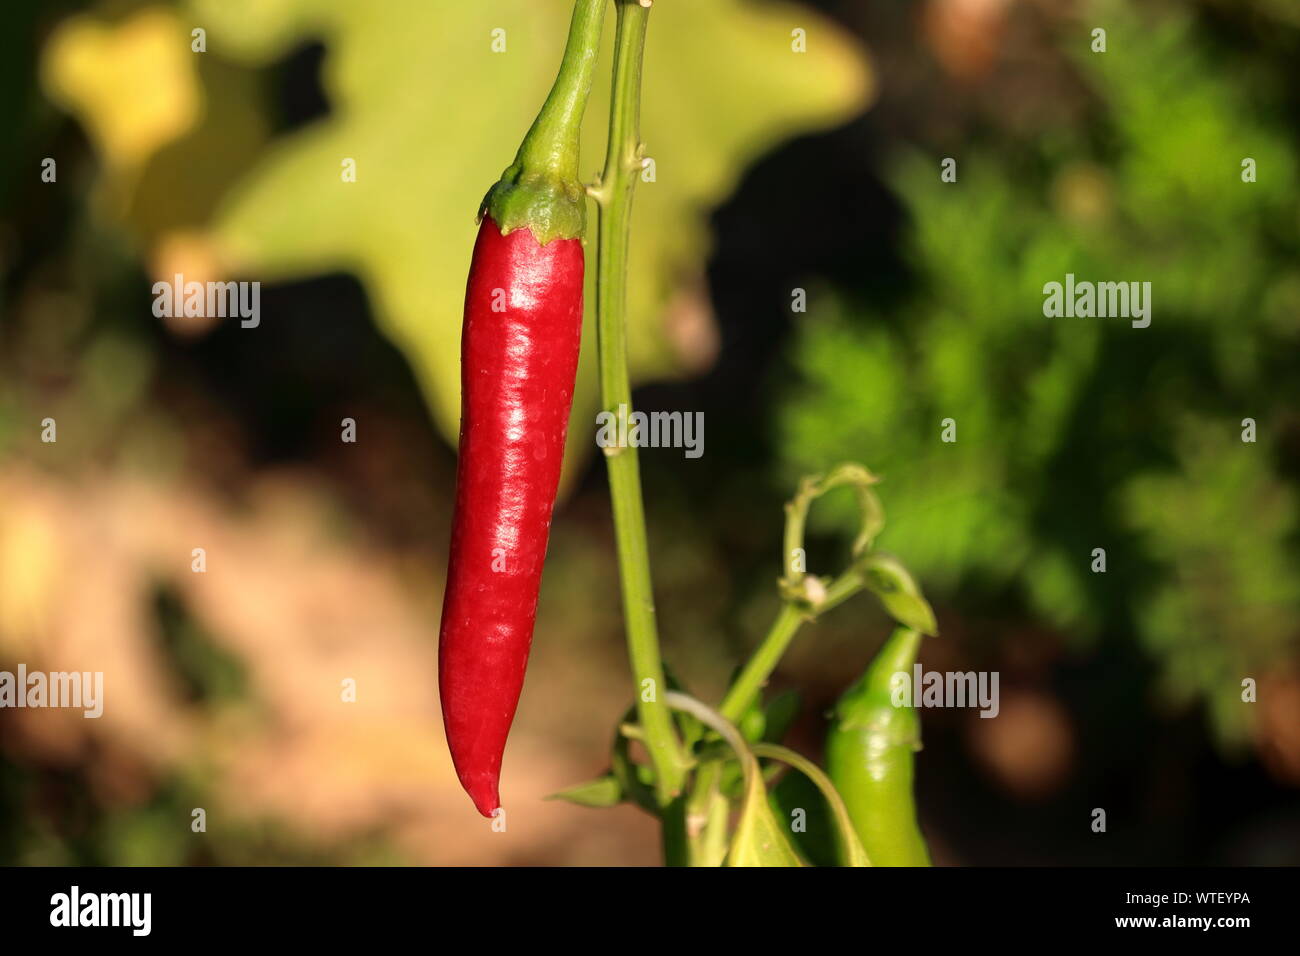 hot red chili peper Stock Photo